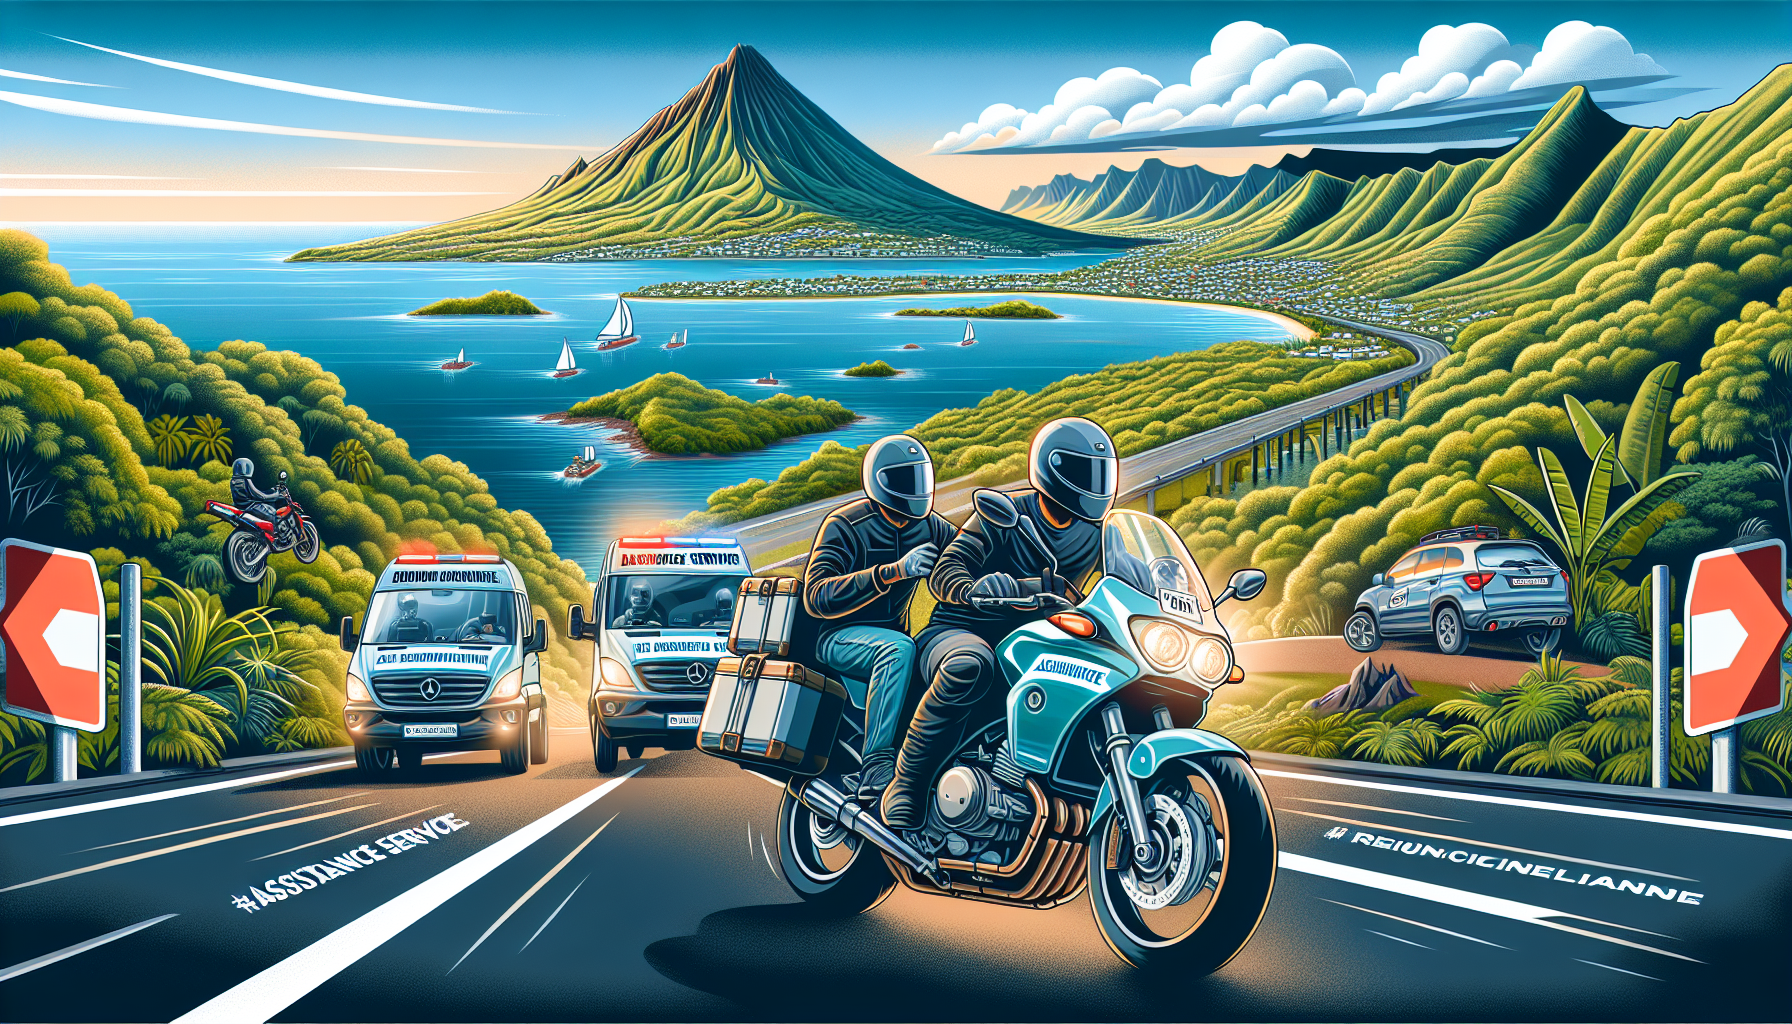 découvrez les services d'assistance proposés pour les motos à la réunion avec notre assurance moto, et roulez en toute sécurité sur l'île. demandez dès maintenant un devis personnalisé.